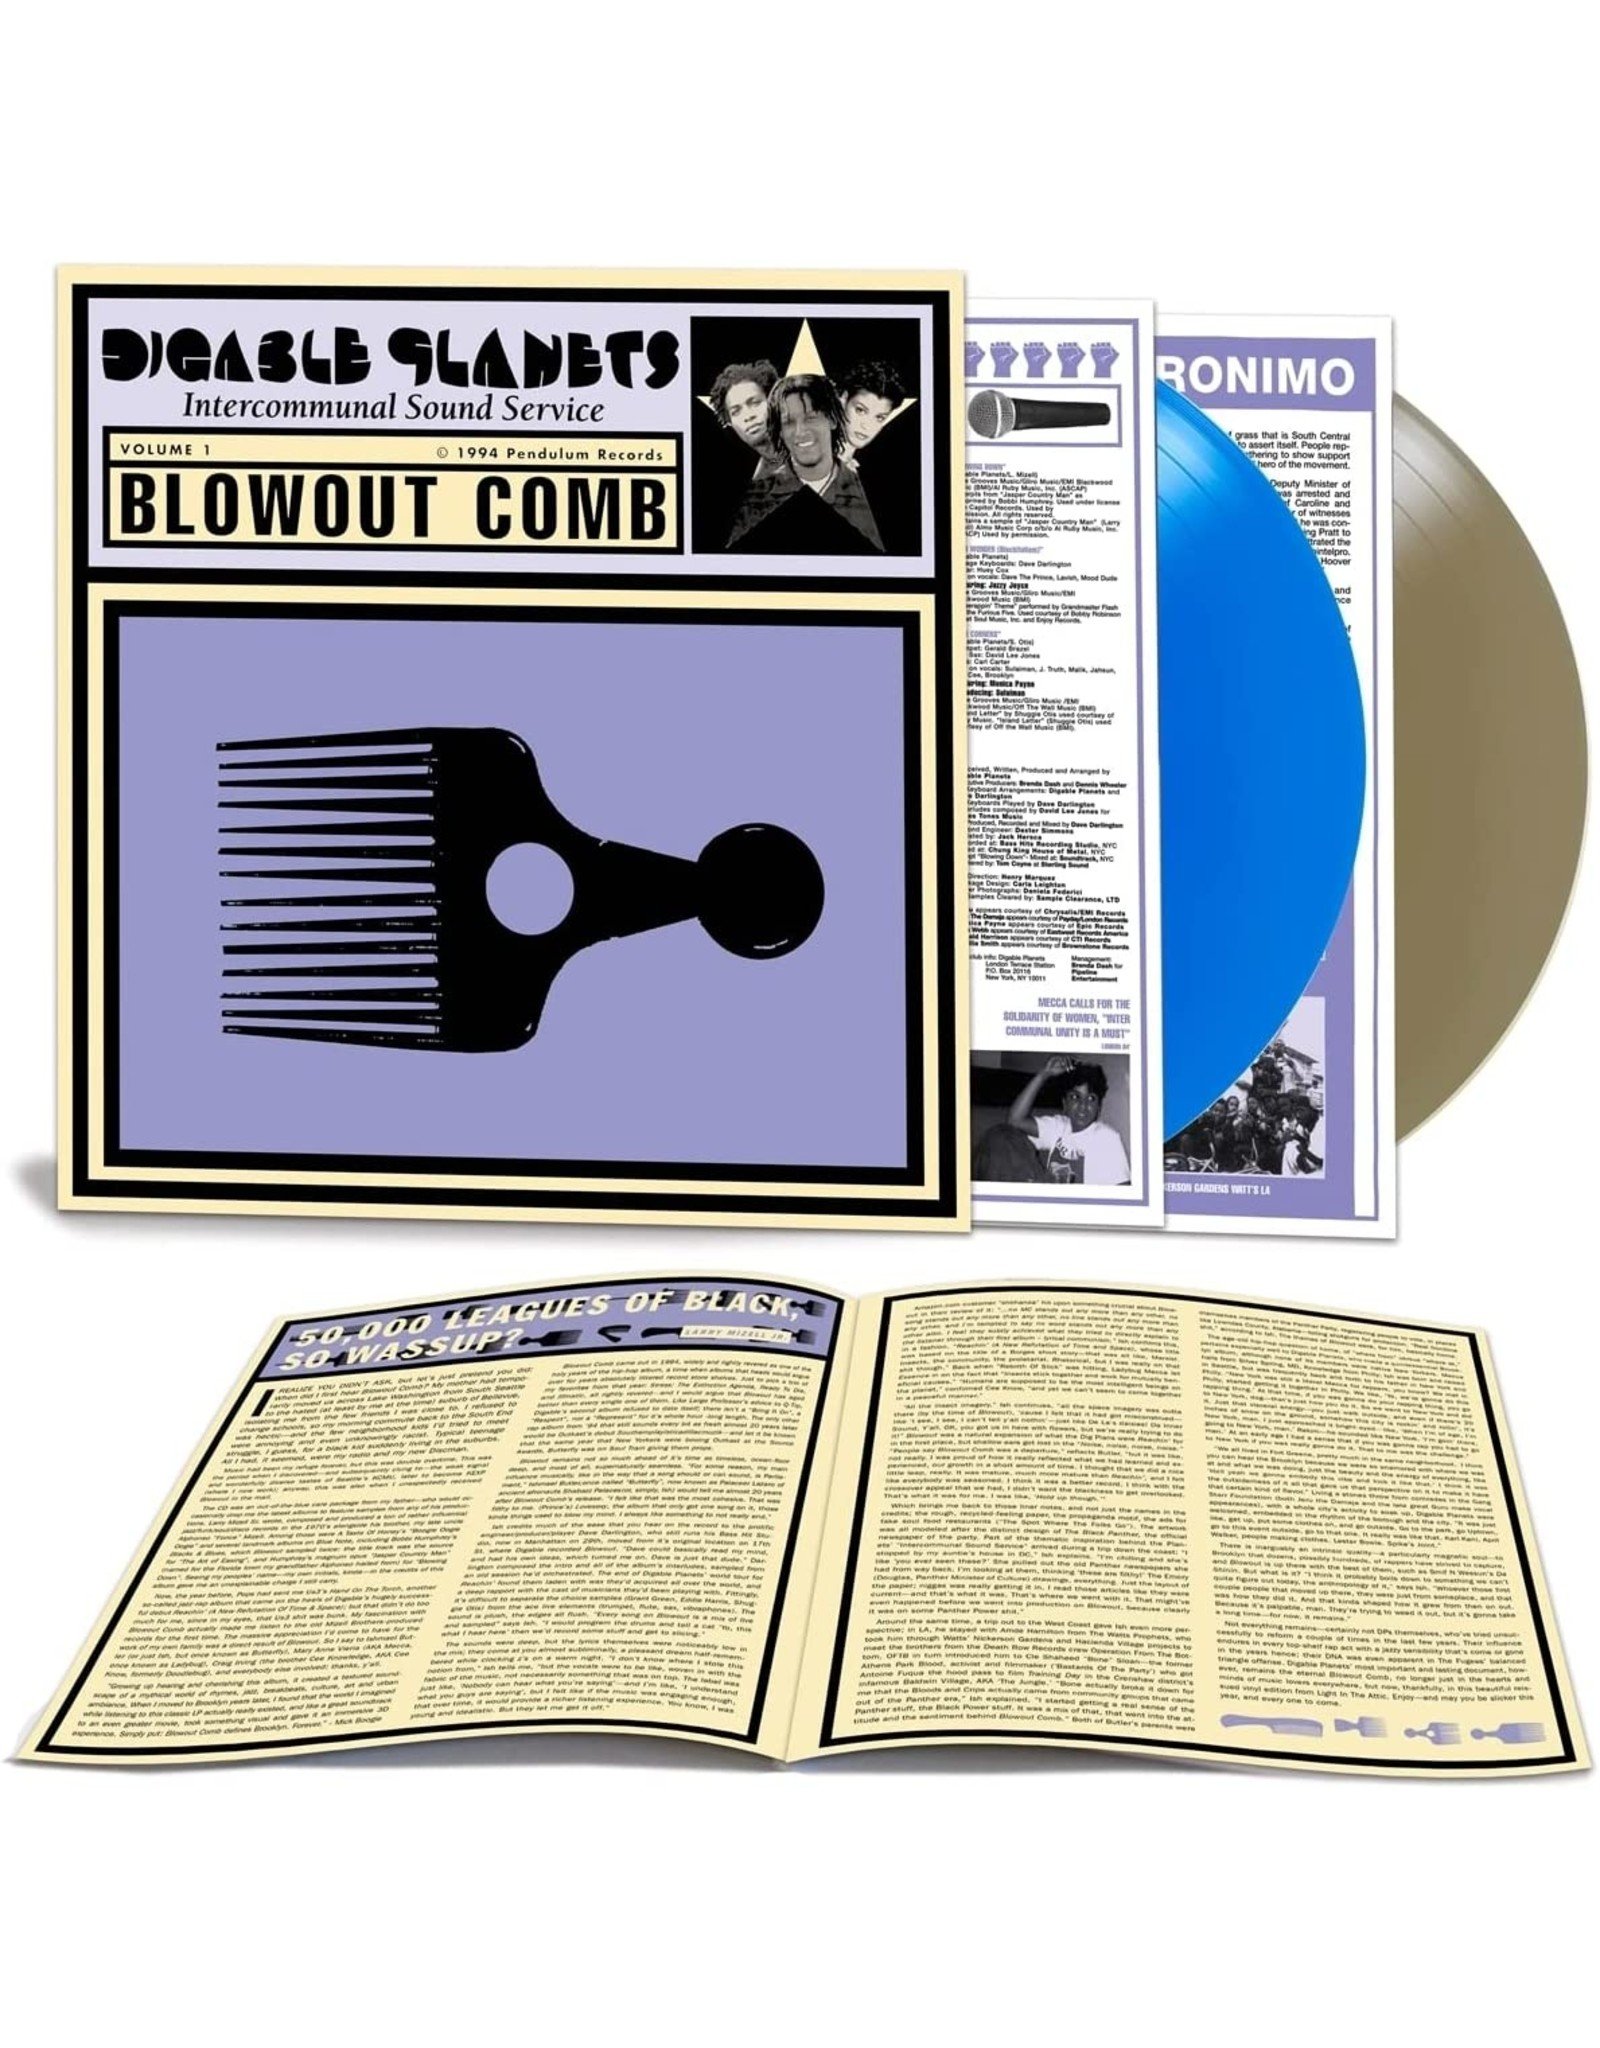 Digable Planets - Blowout Comb (Dazed & Amazed Blue / Gold Vinyl)